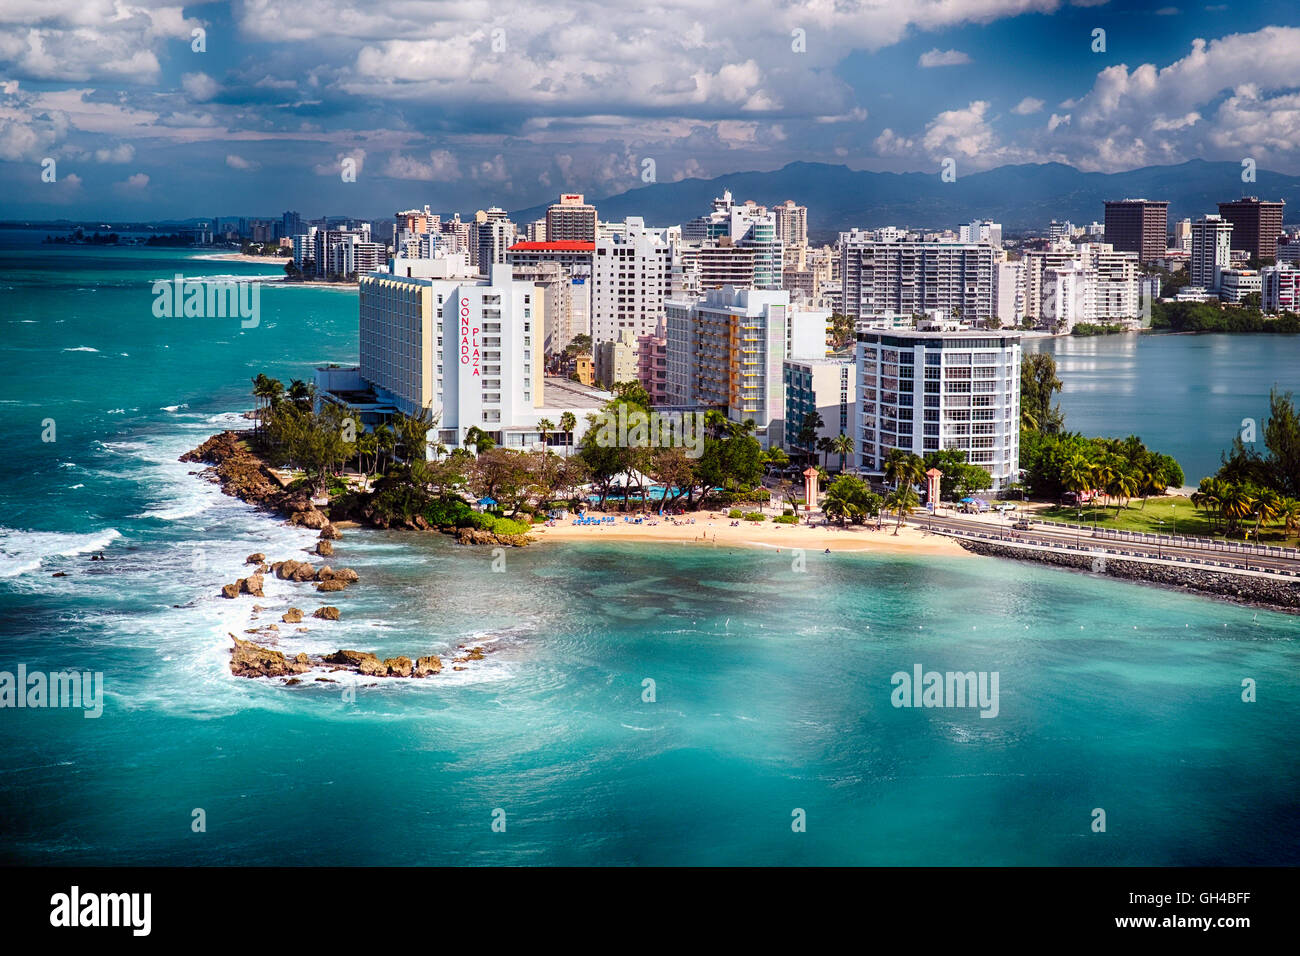 Portrait d'un littoral avec des hôtels et une plage, Condado, San Juan, Puerto Rico Banque D'Images